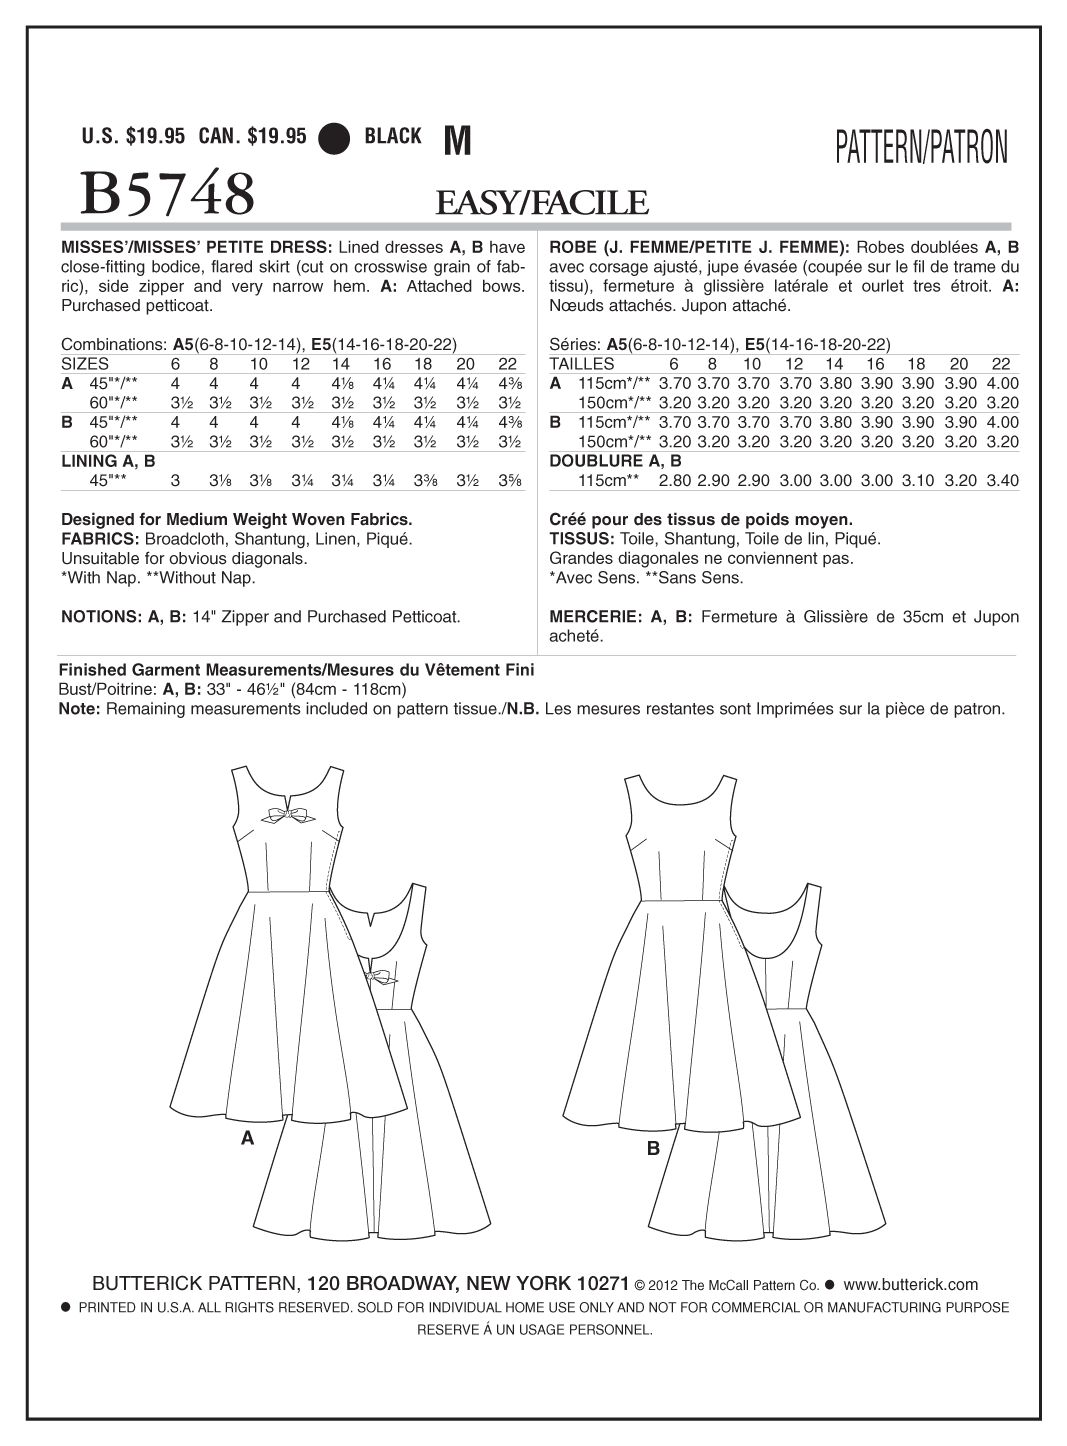 Butterick® Papierschnittmuster Retro '60 Kleid Damen B5748